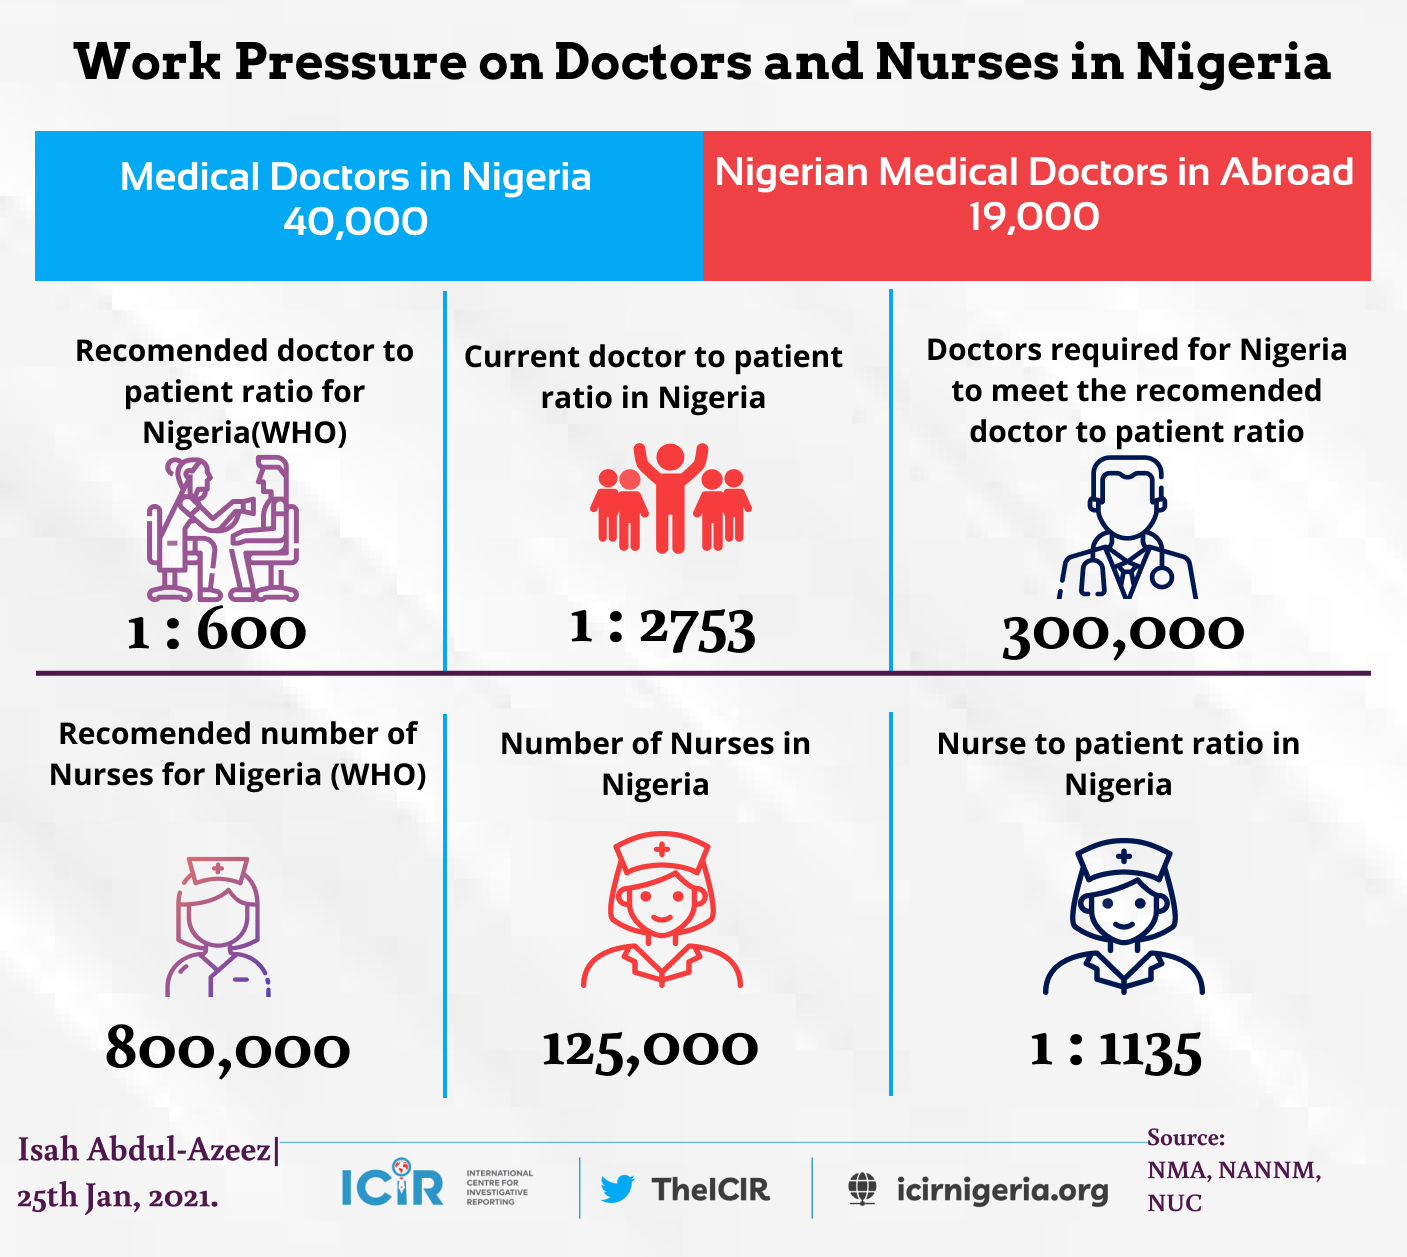 Analysis of work pressure on Doctors and Nurses in Nigeria